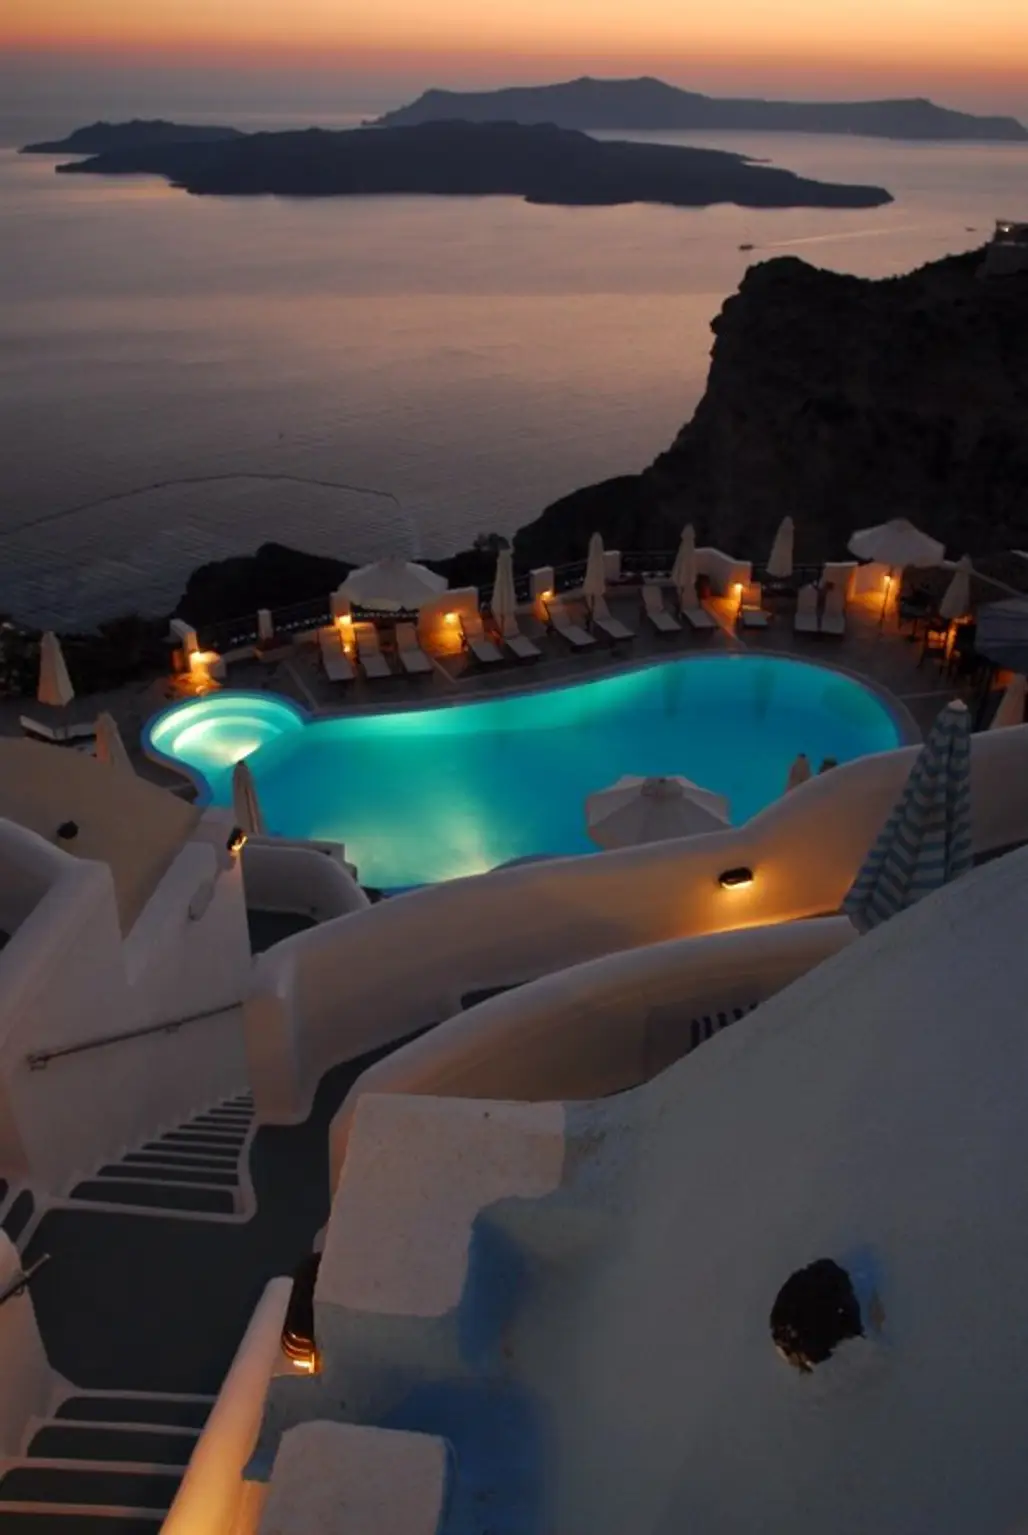 Sunset Pool in Santorini, Greece